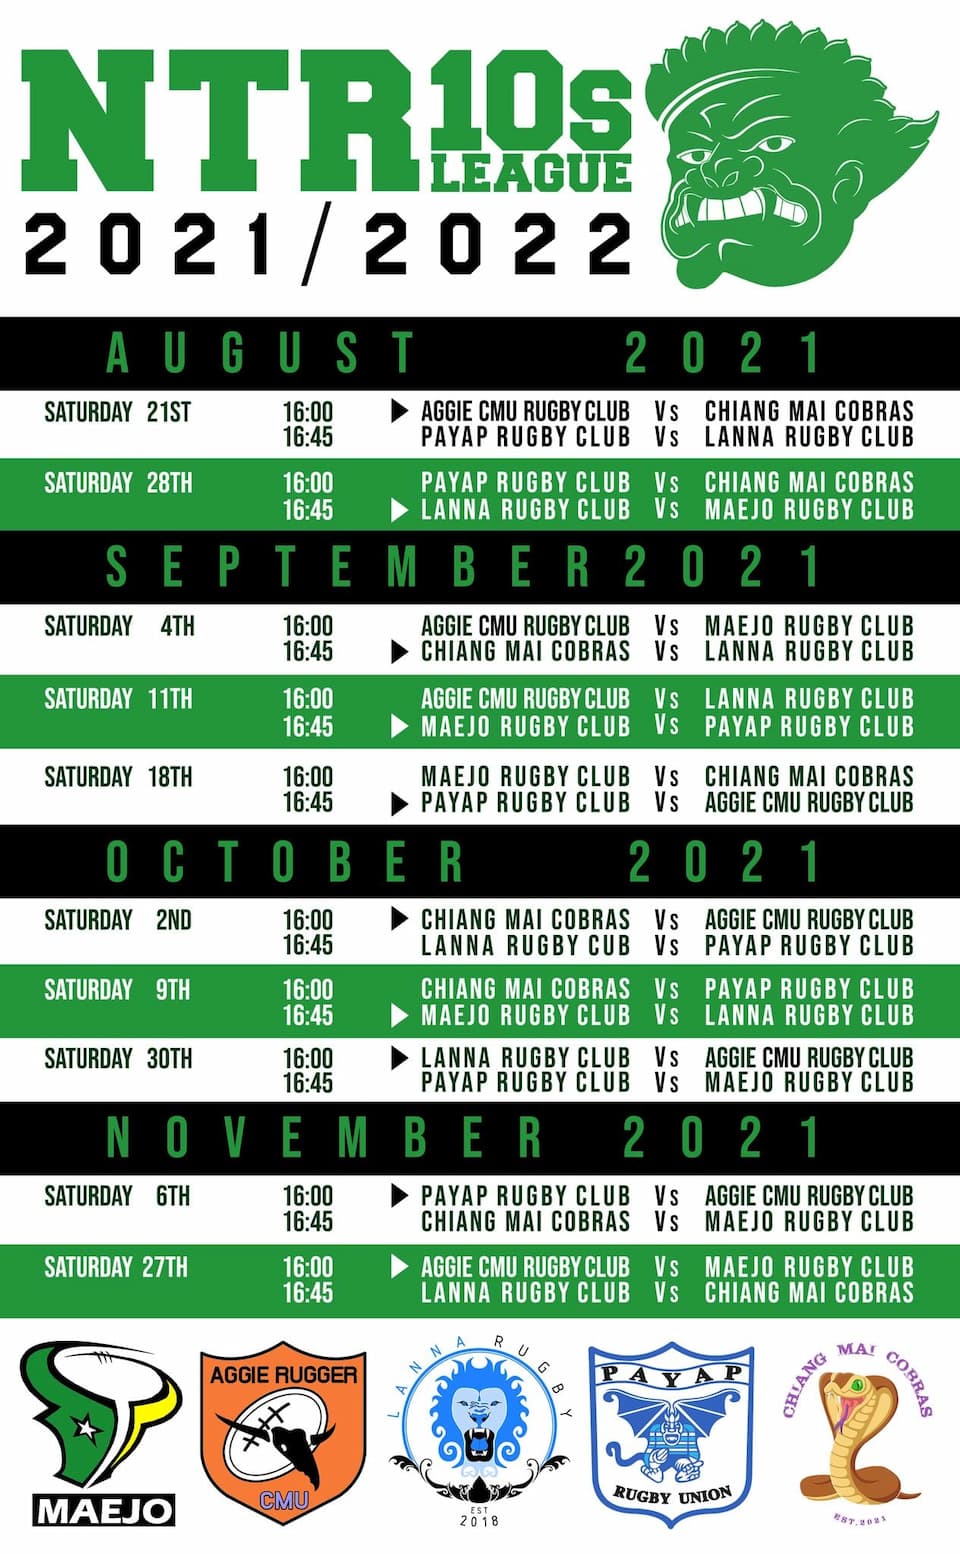 NTR 10s League 2021 schedule